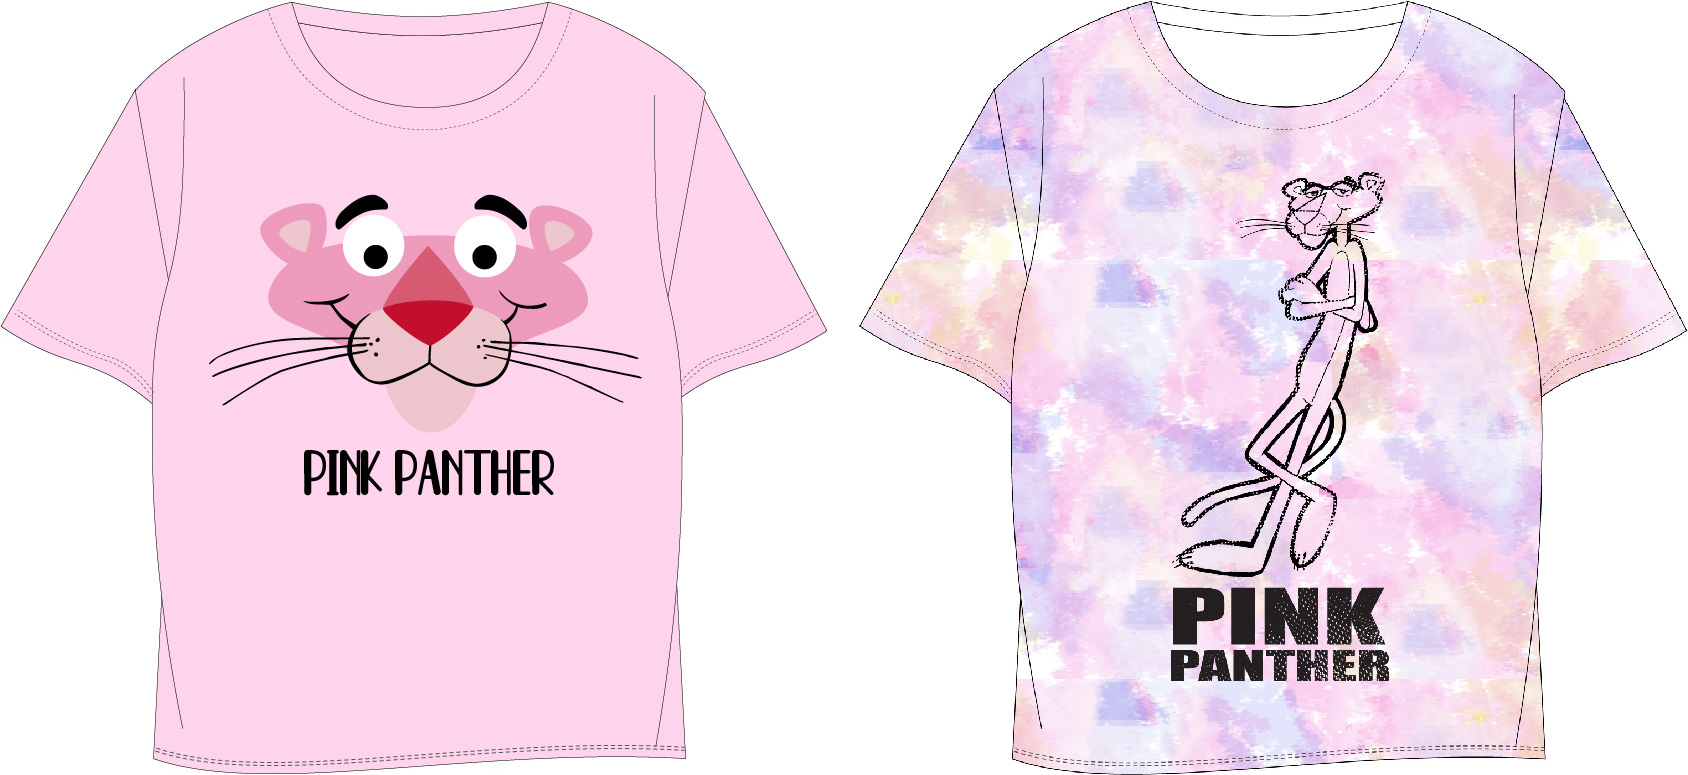 Růžový panter - licence Dívčí tričko - Růžový panter 5202068, růžová Barva: Růžová, Velikost: 158